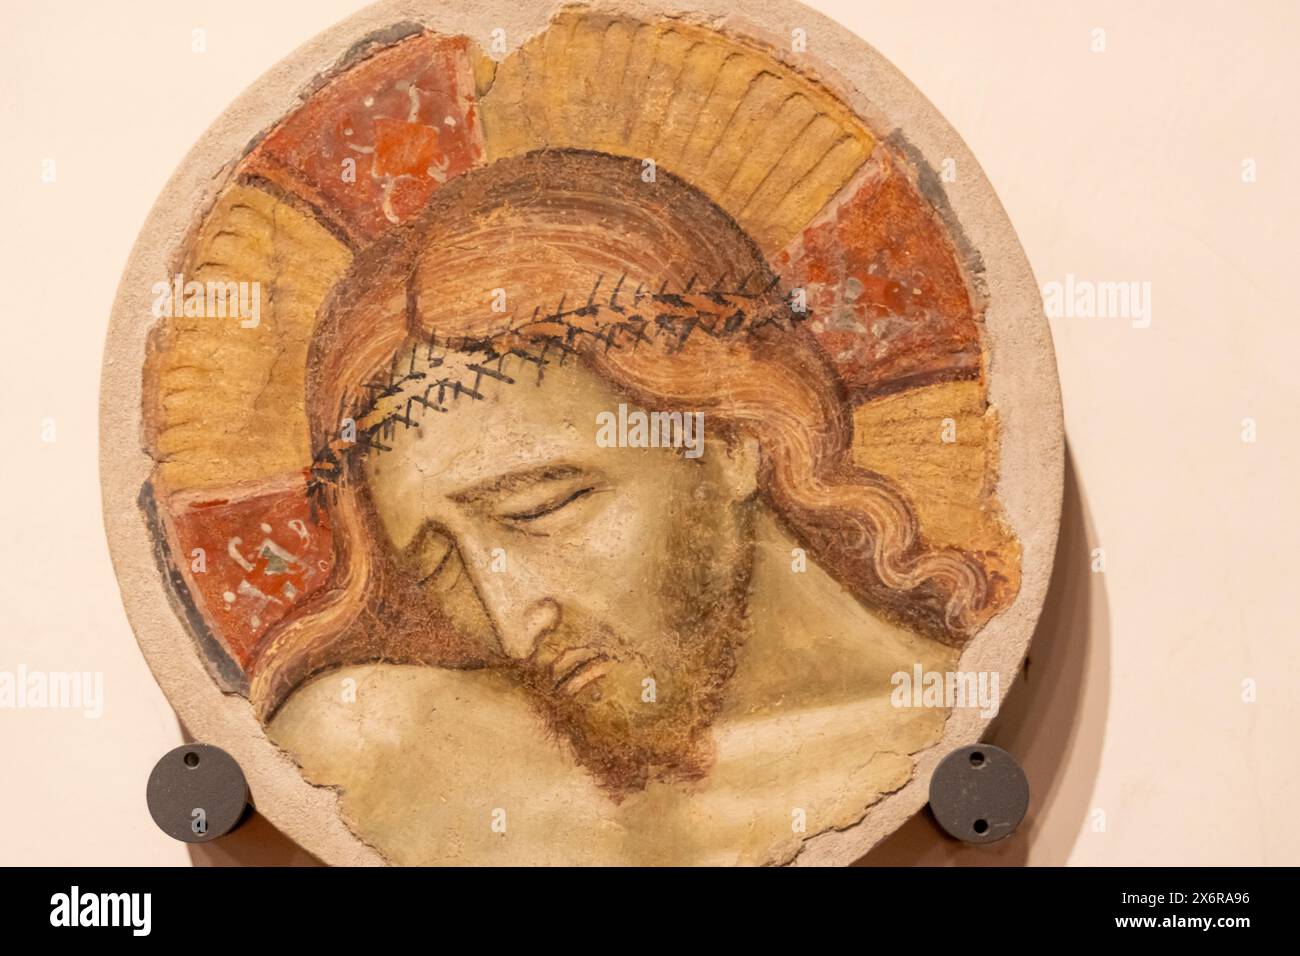 Gros plan sur une plaque murale décorative en pierre décorée du visage de Jésus crucifié Banque D'Images